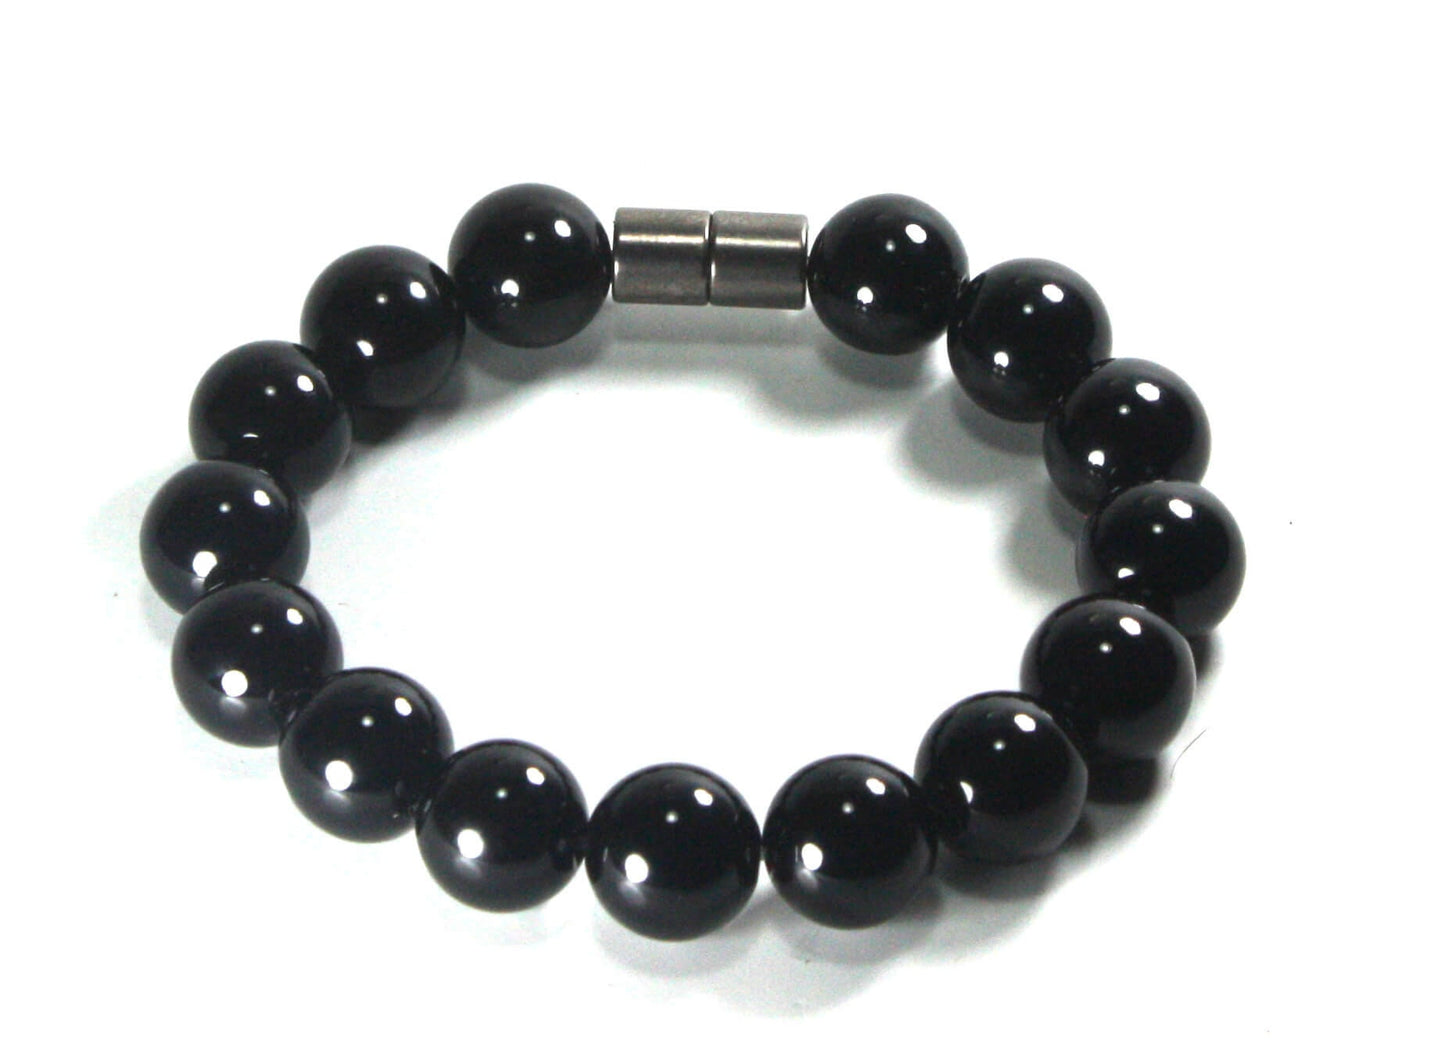 Black Onyx Bracelet for Men/Women - Protection Crystals - EMF Protection - Black Onyx Crystal Jewelry